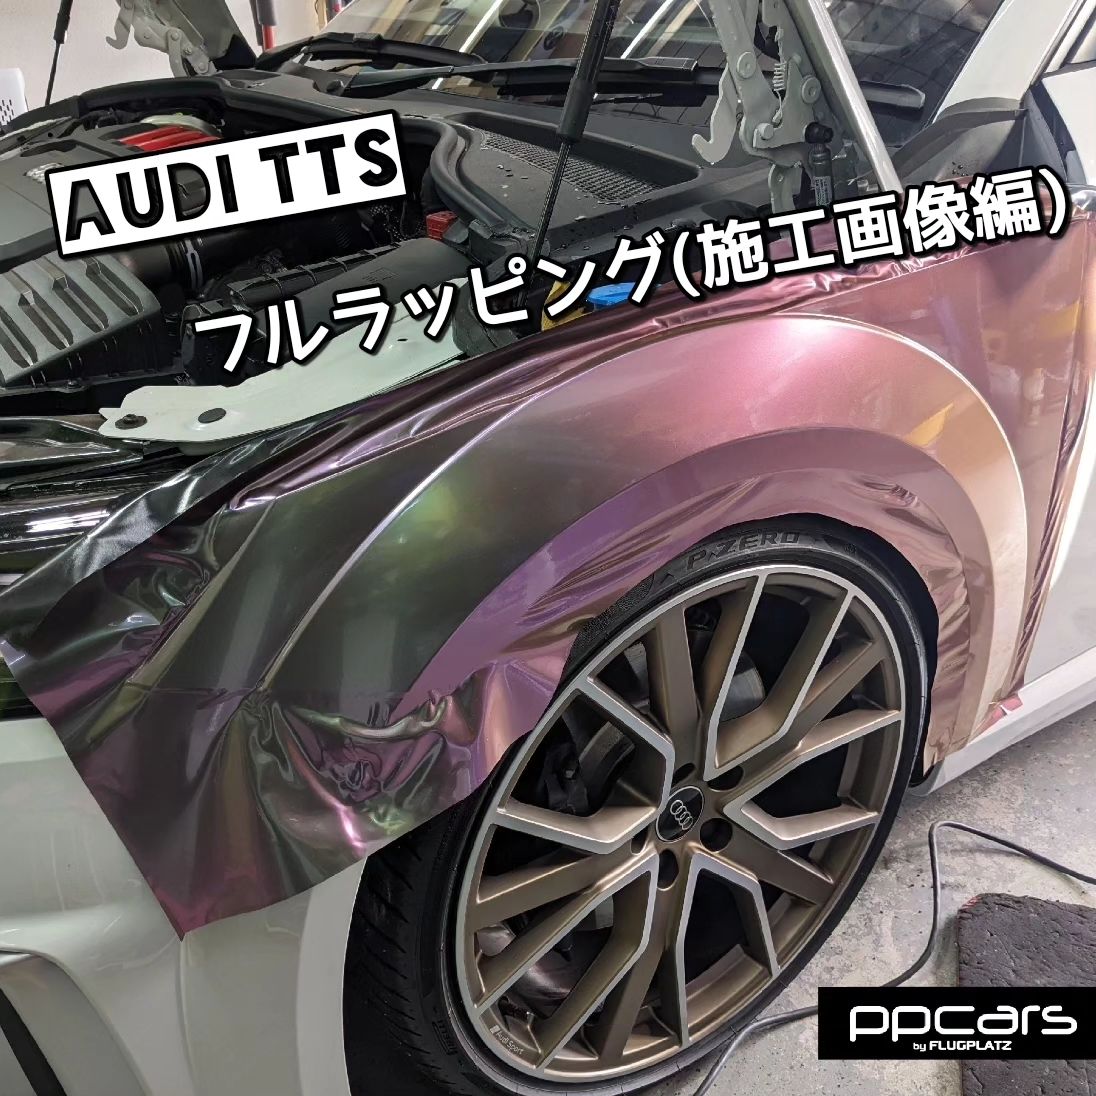 Audi TTS(8S) x フルラッピング(施行画像編)⁣⁣